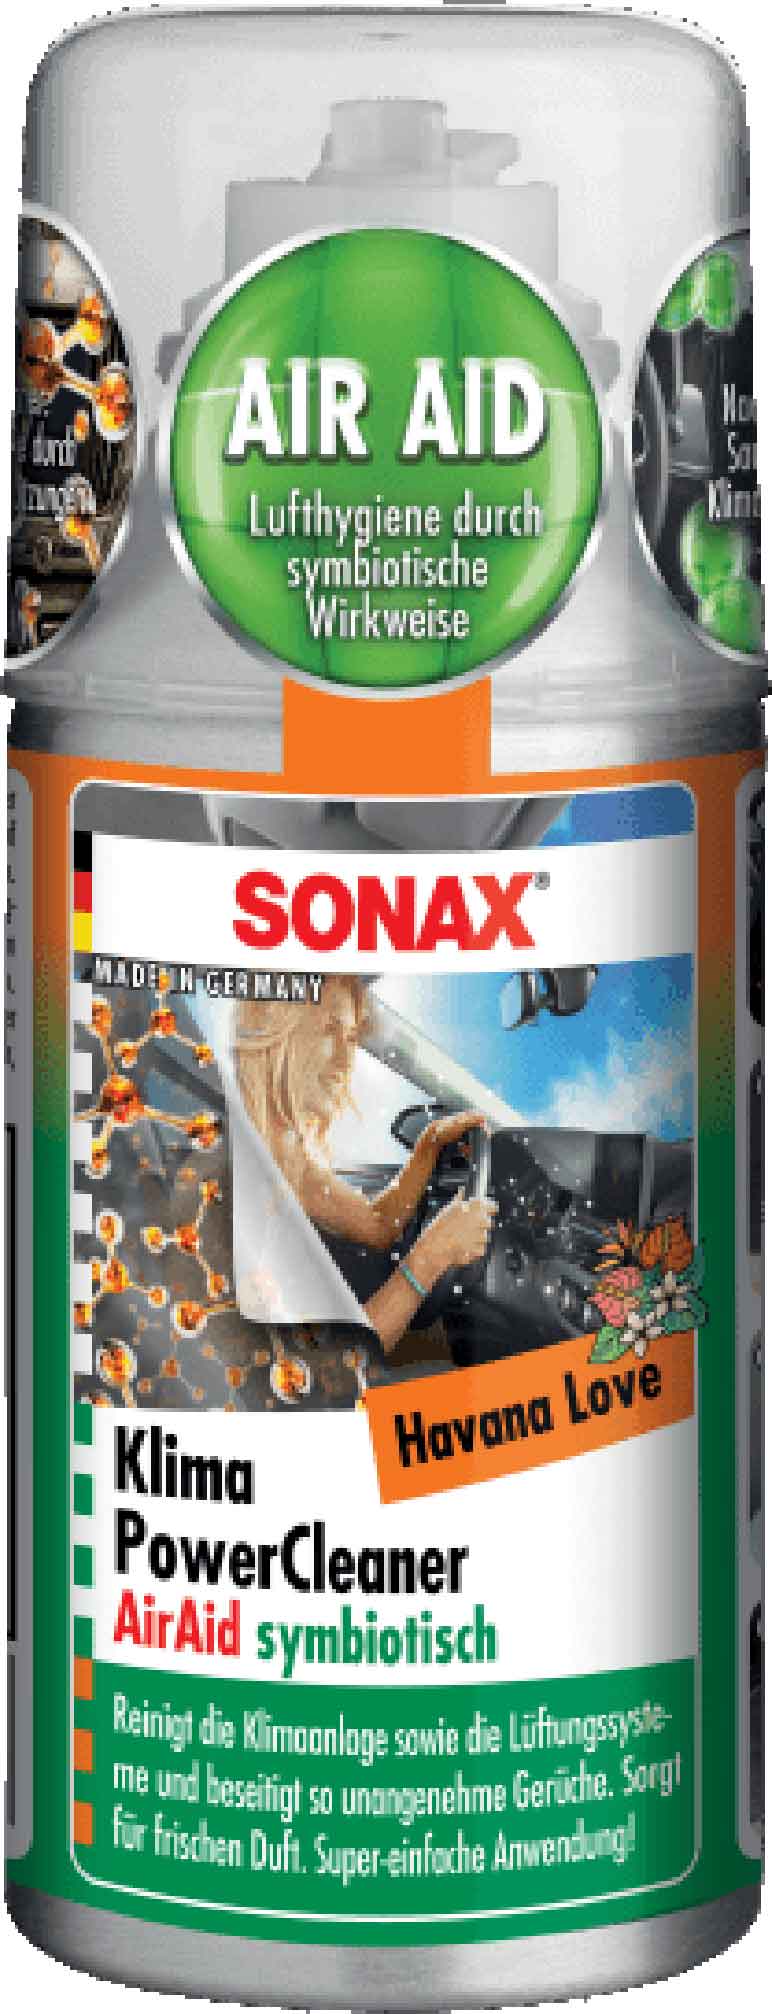 SONAX 3x 100 ml KlimaPowerCleaner AirAid symbiotisch Havana Love 03238000  günstig online kaufen